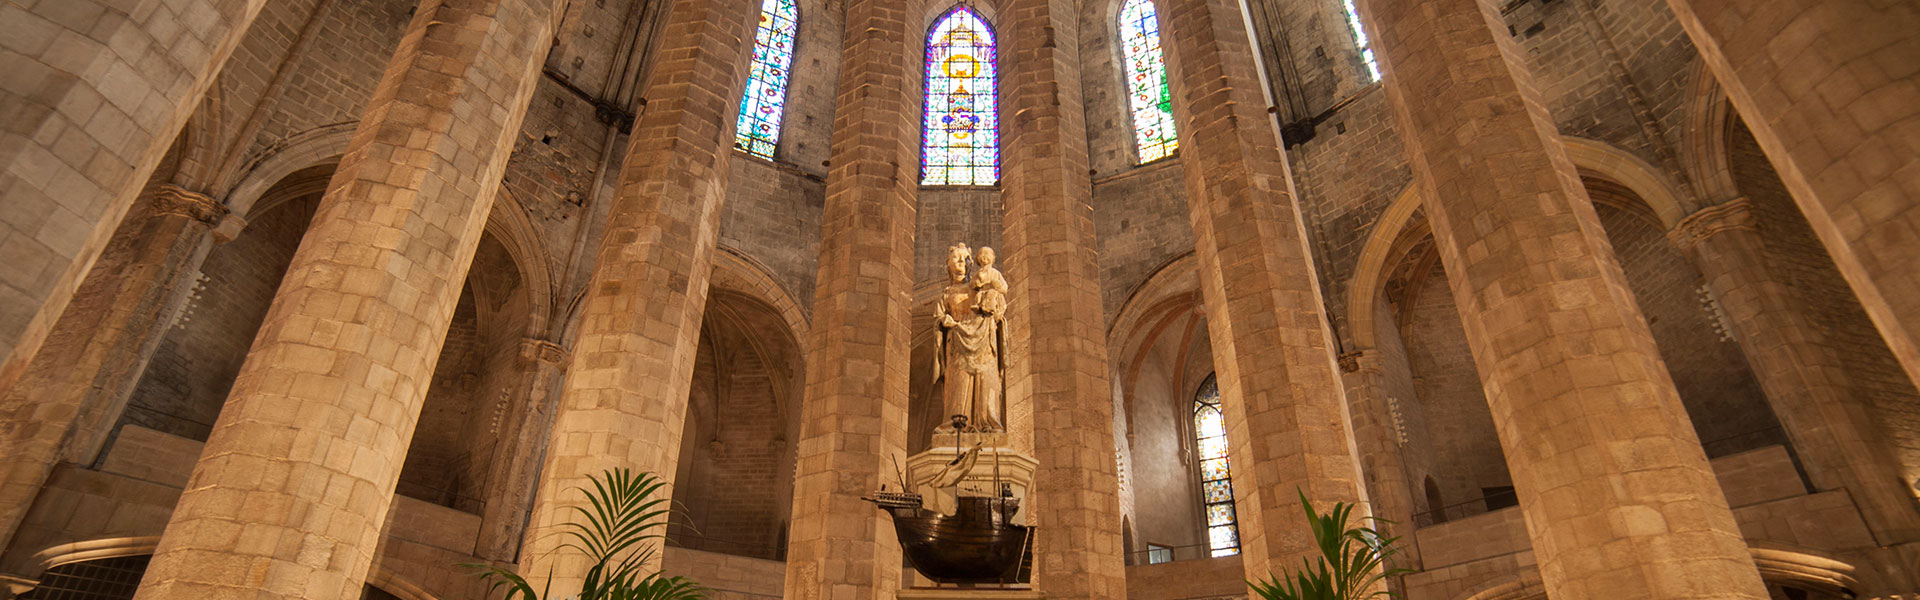 Inici | Basílica Santa Maria del Mar